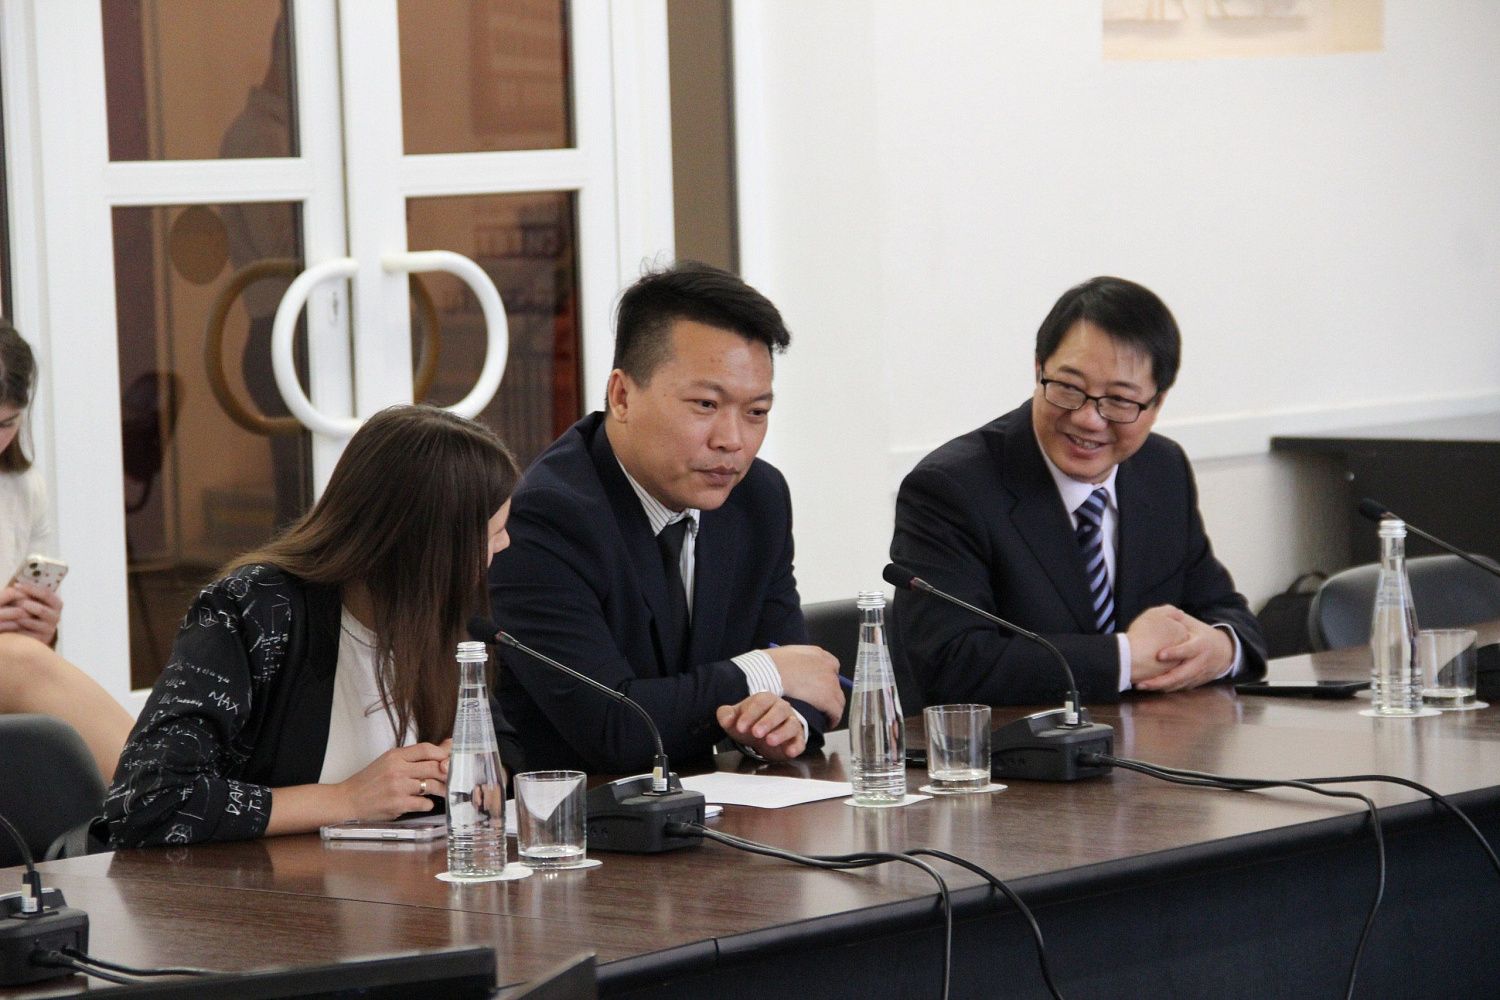 Курский государственный университет с официальным визитом посетила делегация одного из крупнейших китайских высших образовательных учреждений – Гуансийского педагогического университета